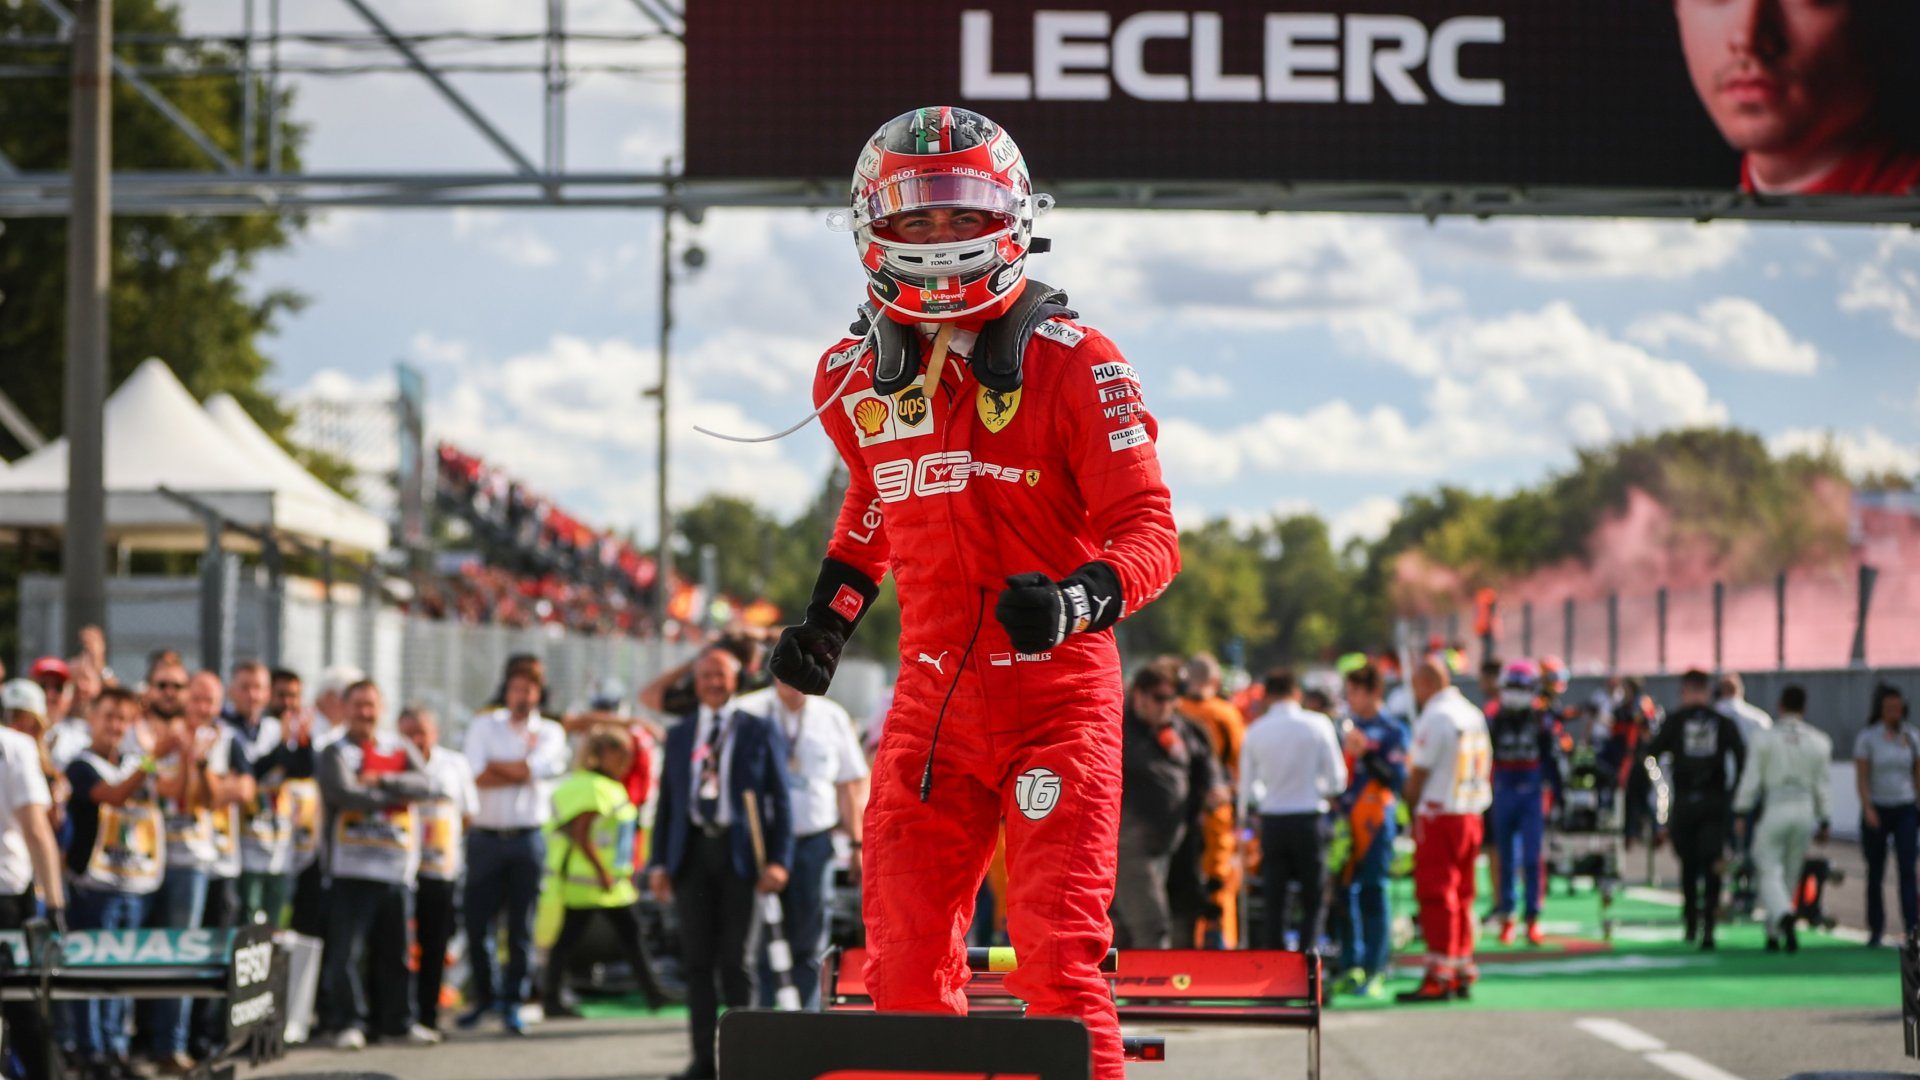 GP de Italia: Leclerc vuelve a vencer, ha nacido una estrella